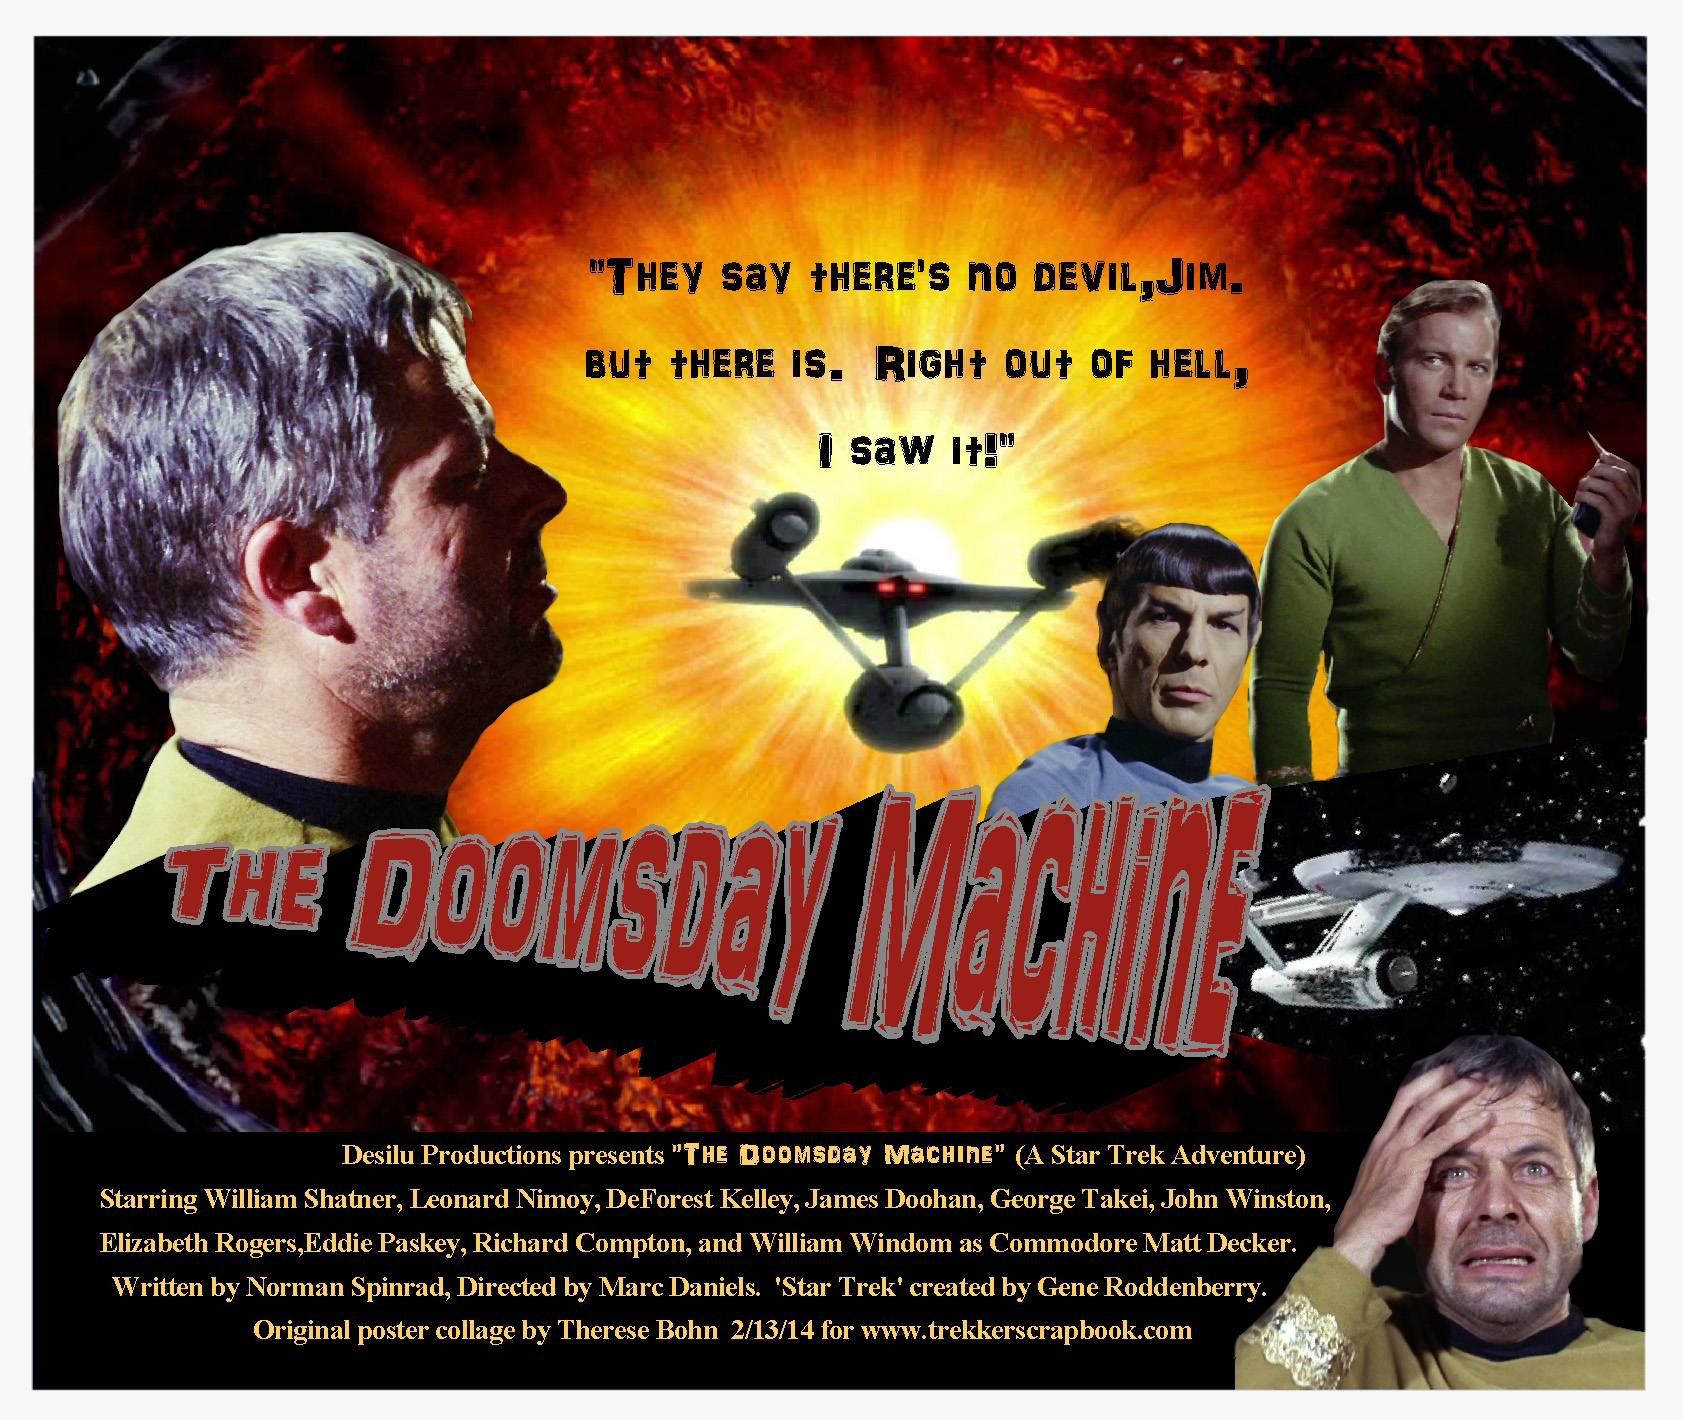 https://trekkerscrapbook.files.wordpress.com/2014/02/35-doomsday-machine.jpg